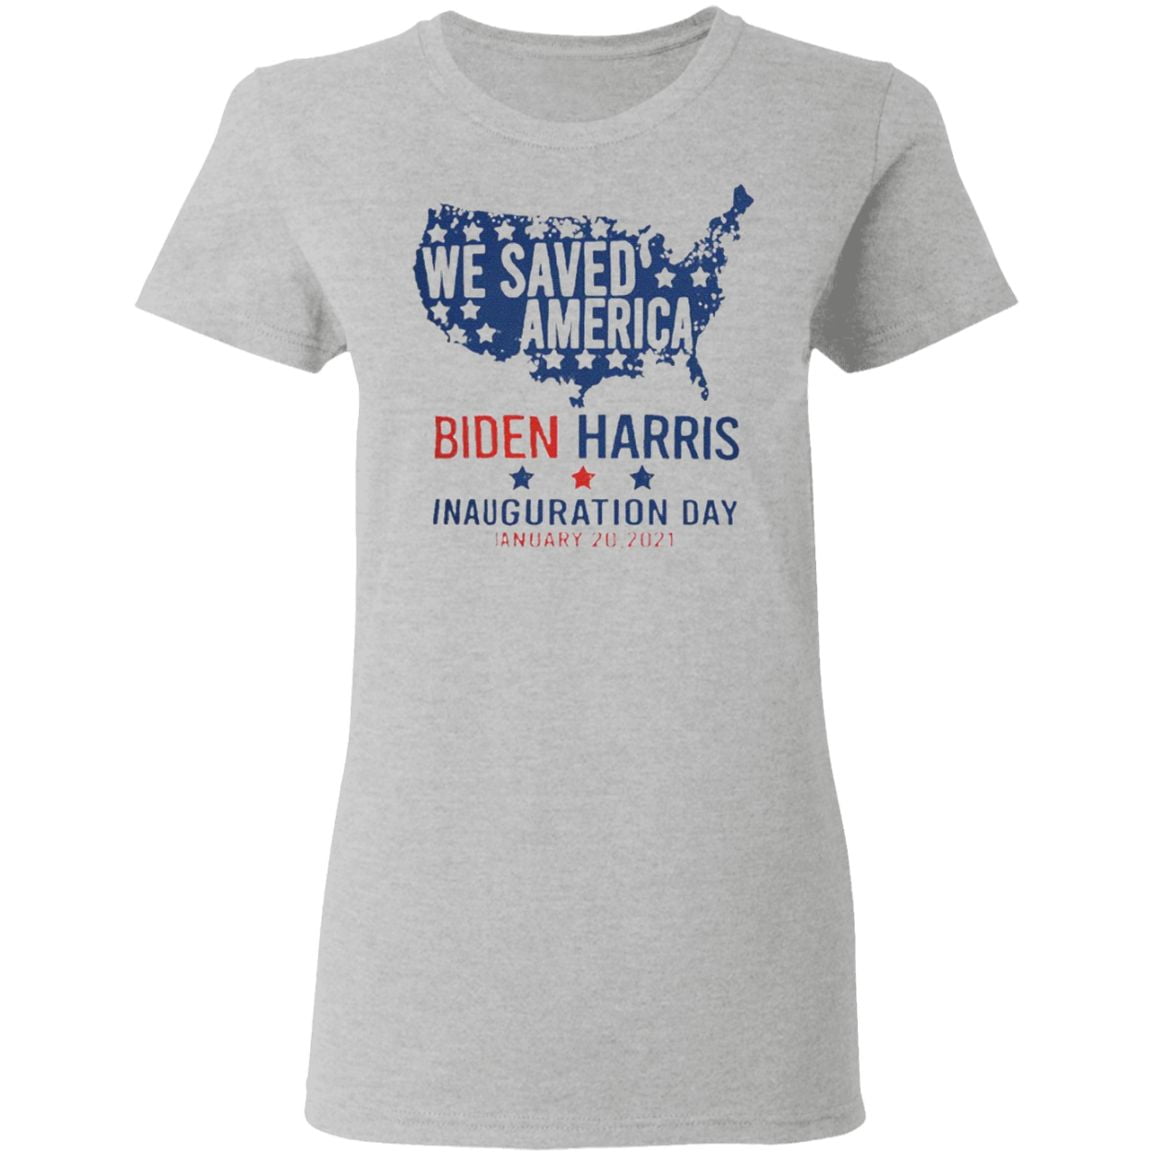 We Saved America Biden Harris Inauguration Day Jaunuary 20 2021 t shirt